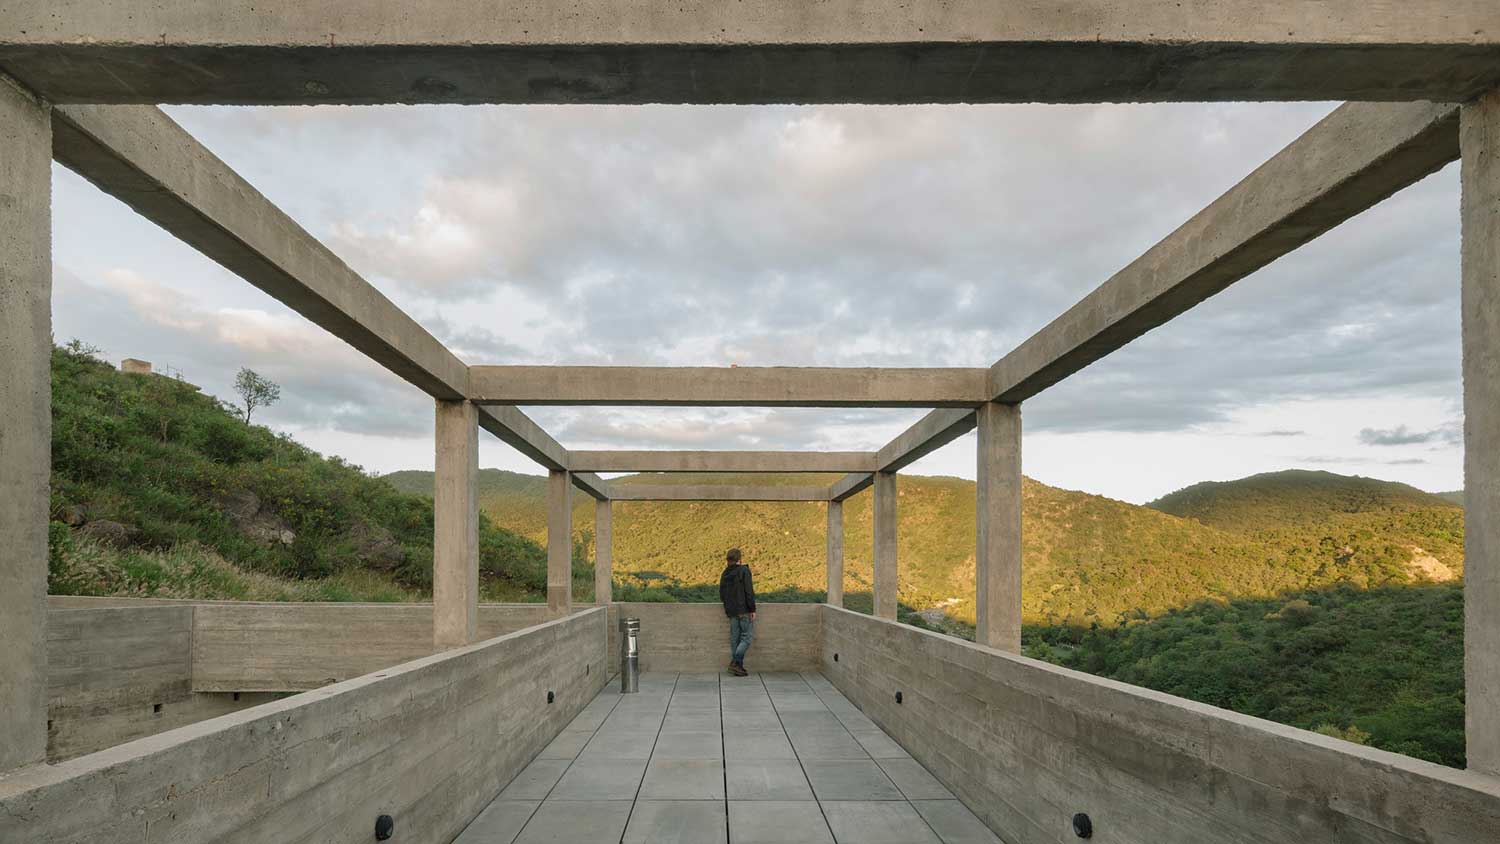 Workshop House / Agustín Berzero + Manuel Gonzalez Veglia - TECTUM Arquitectura